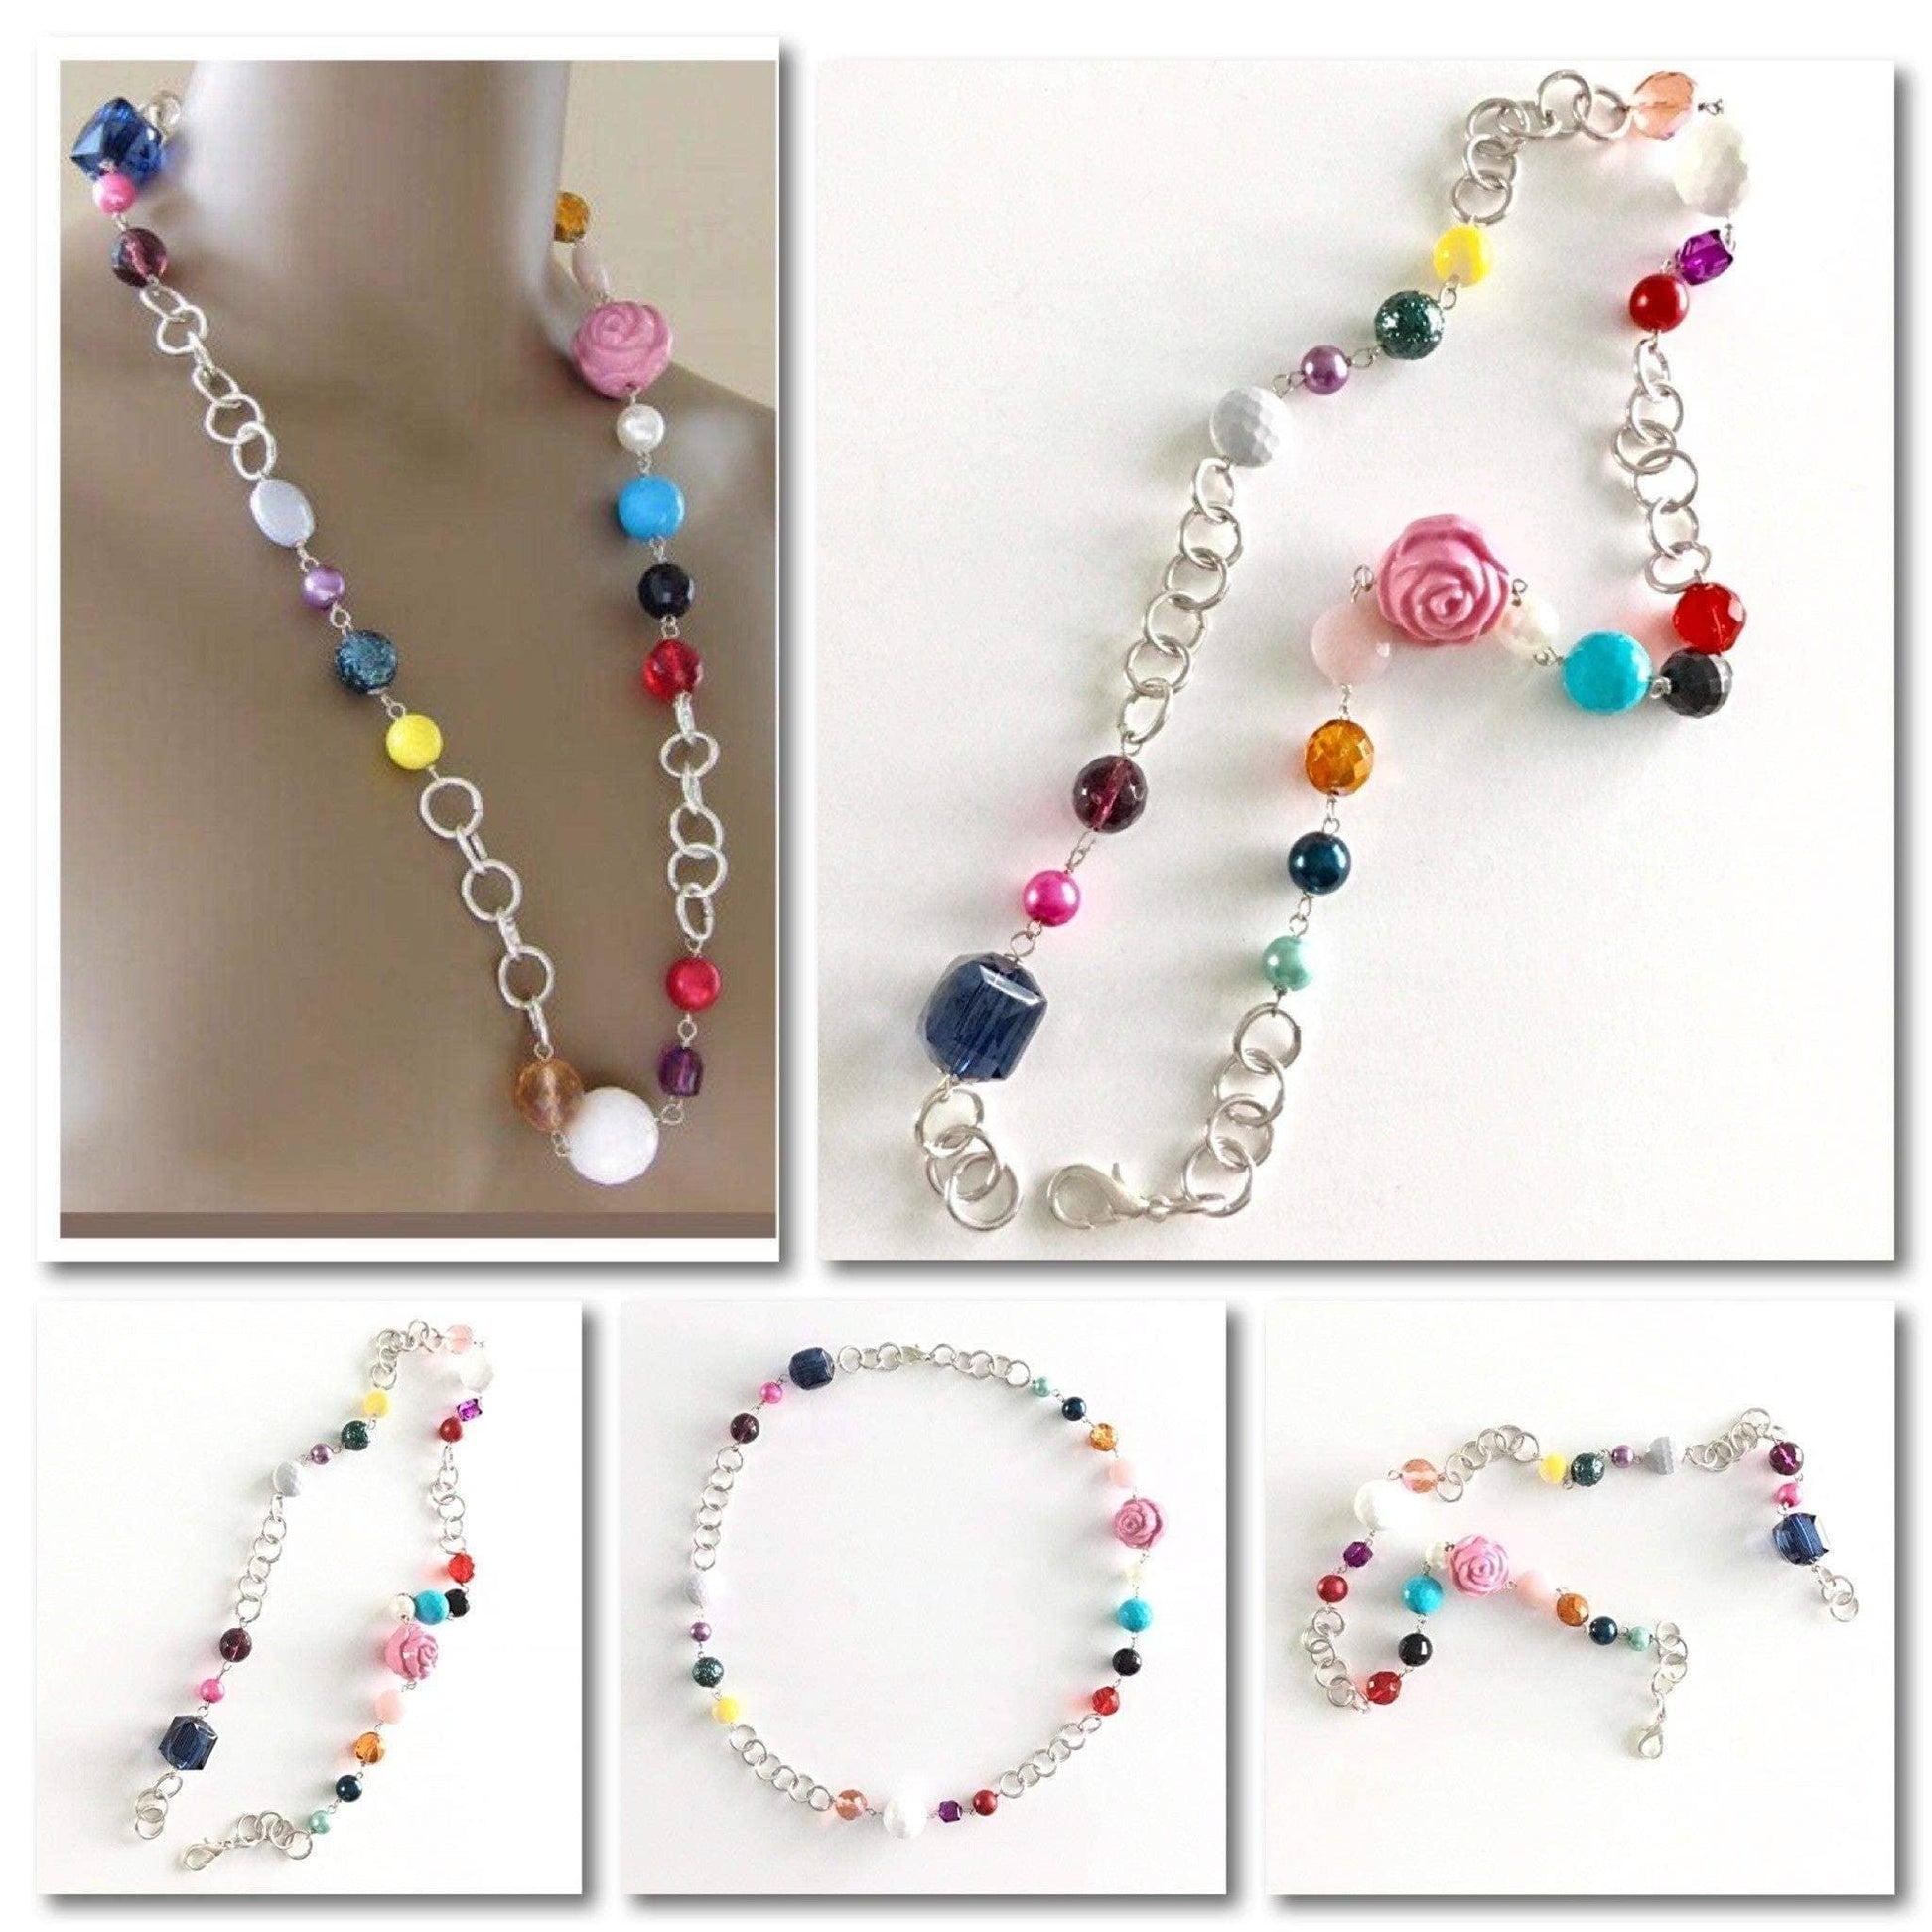 Swingy chain multi colored bead necklace